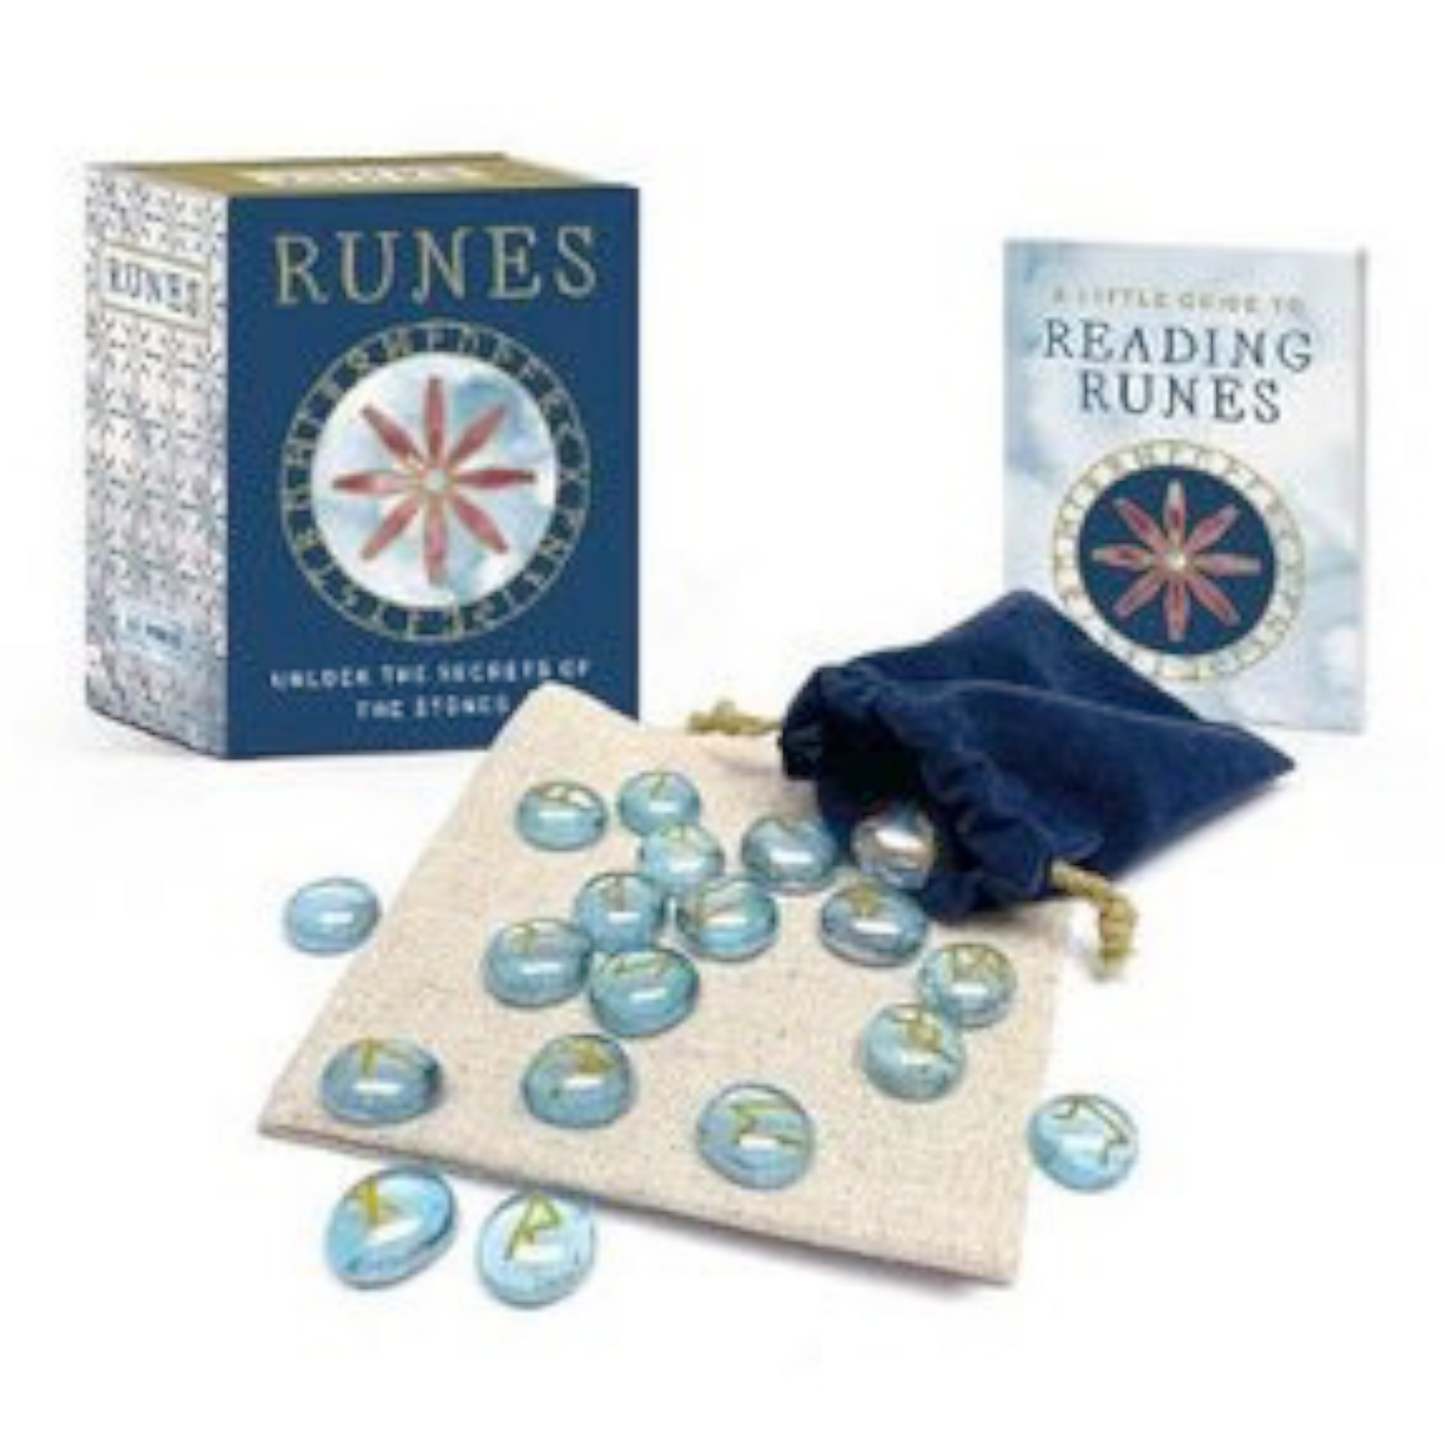 Runes Mini Kit